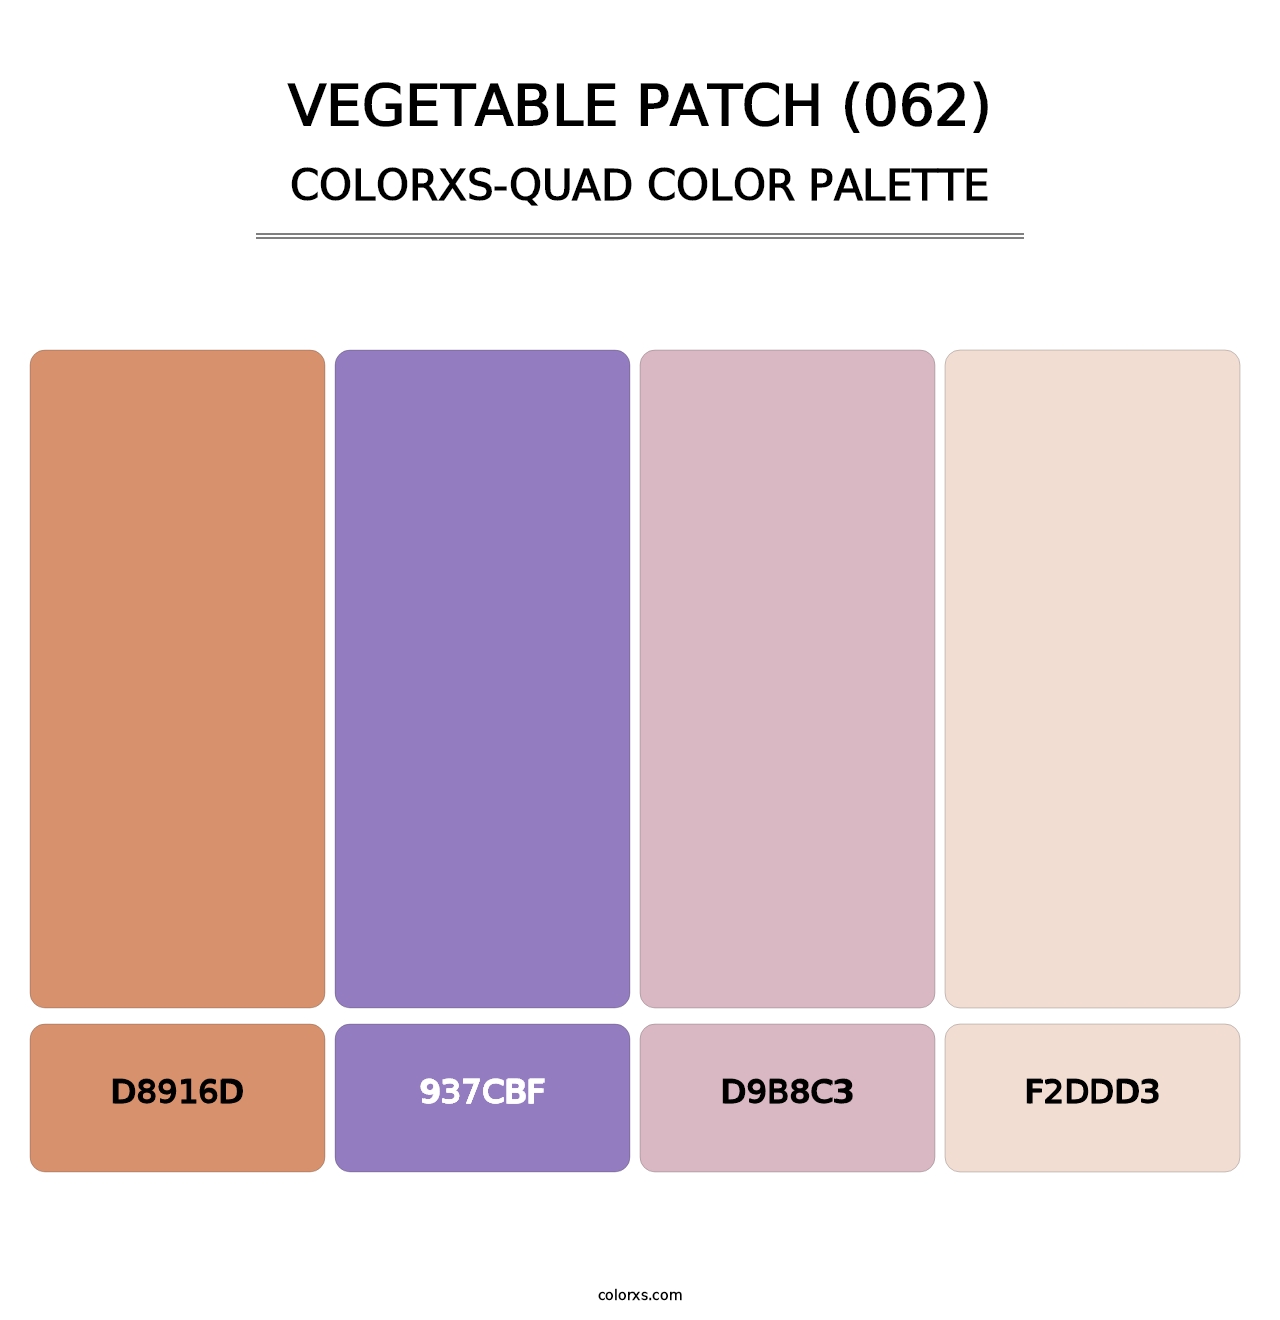 Vegetable Patch (062) - Colorxs Quad Palette